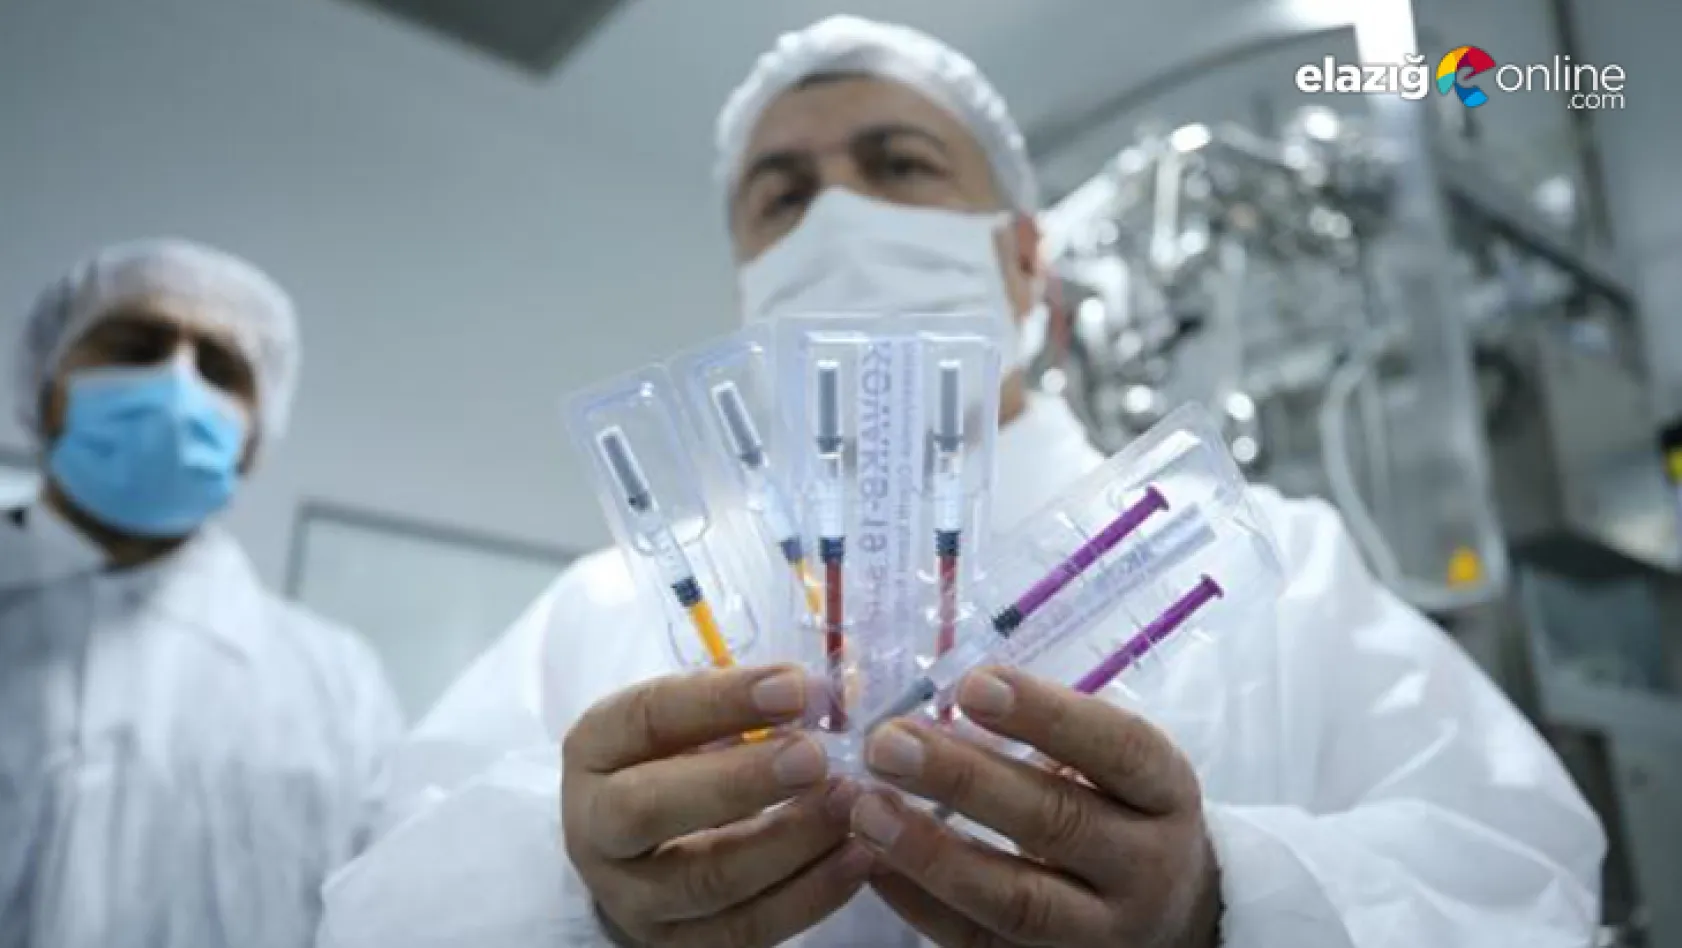 Korona aşısında dünyada bir ilk olacak yeni teknik! Artık kol uzatmayacağız